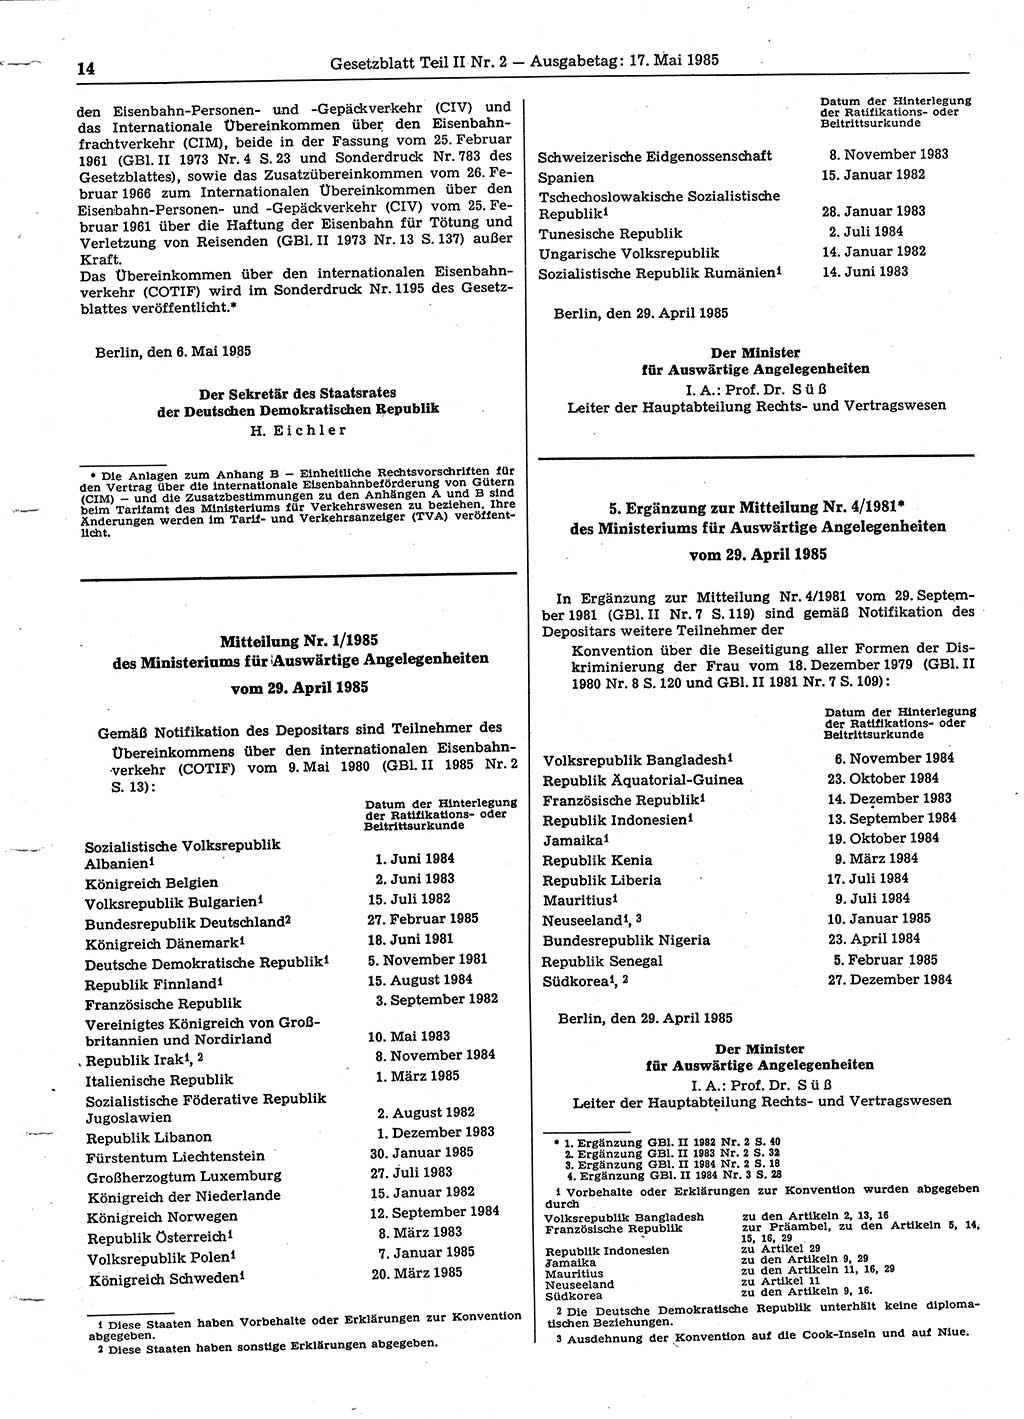 Gesetzblatt (GBl.) der Deutschen Demokratischen Republik (DDR) Teil ⅠⅠ 1985, Seite 14 (GBl. DDR ⅠⅠ 1985, S. 14)